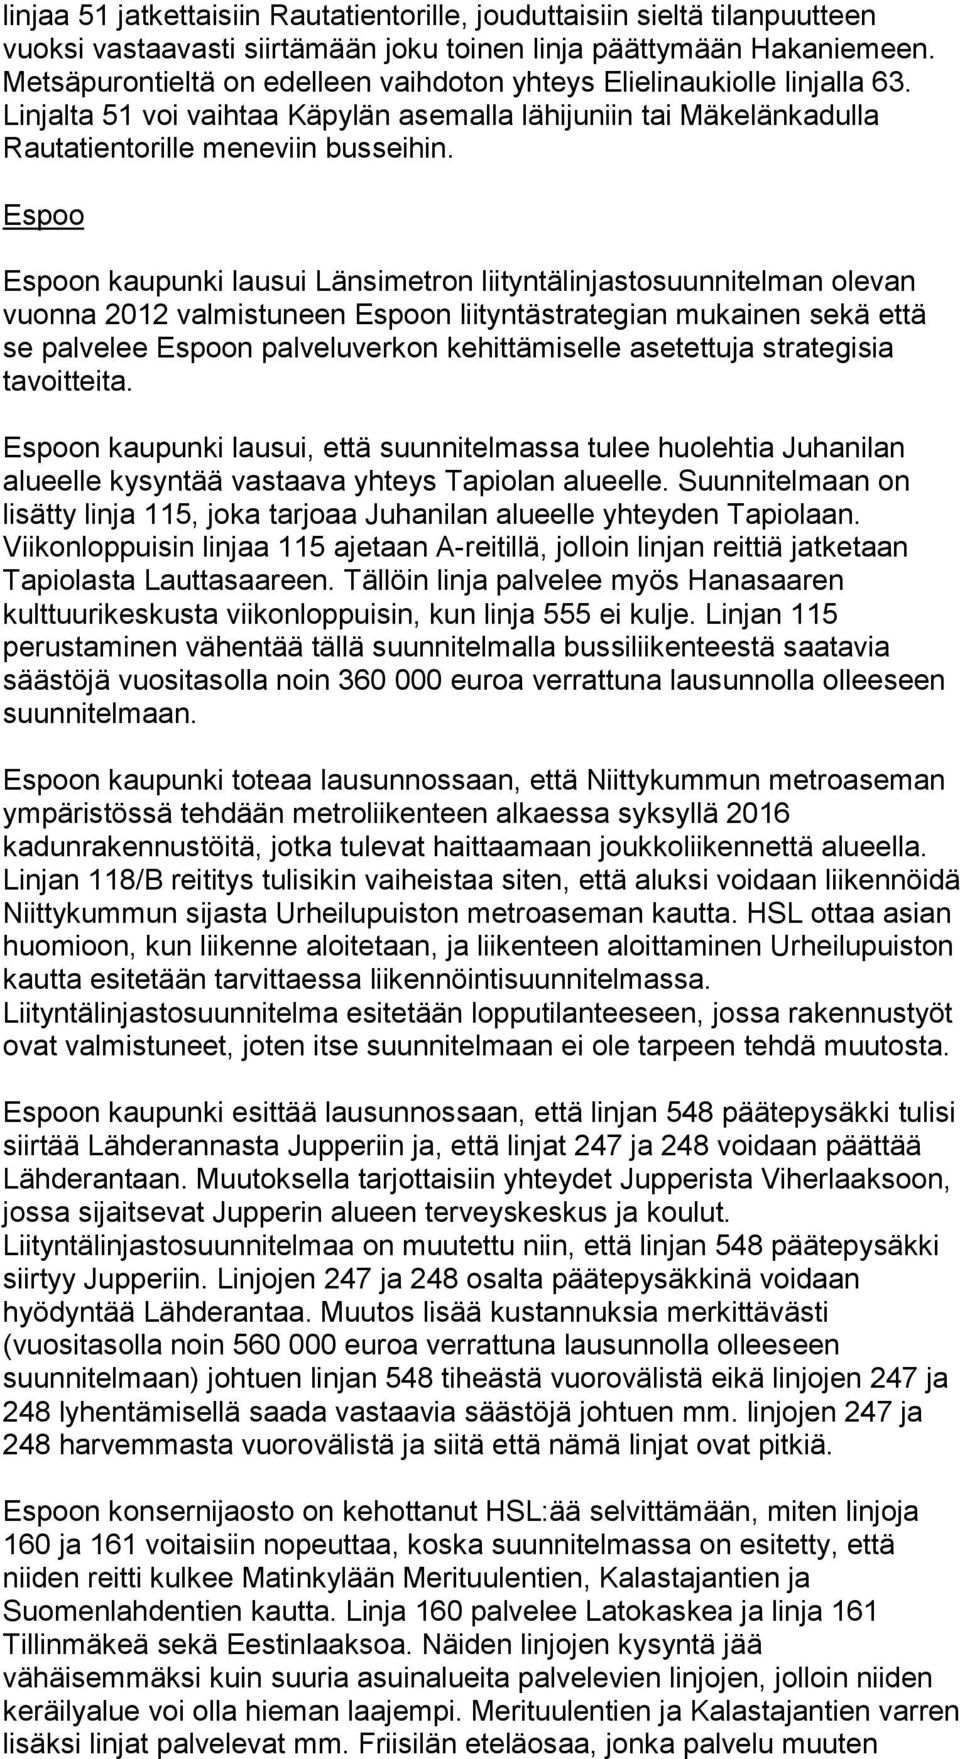 Espoo Espoon kaupunki lausui Länsimetron liityntälinjastosuunnitelman olevan vuonna 2012 valmistuneen Espoon liityntästrategian mukainen sekä että se palvelee Espoon palveluverkon kehittämiselle